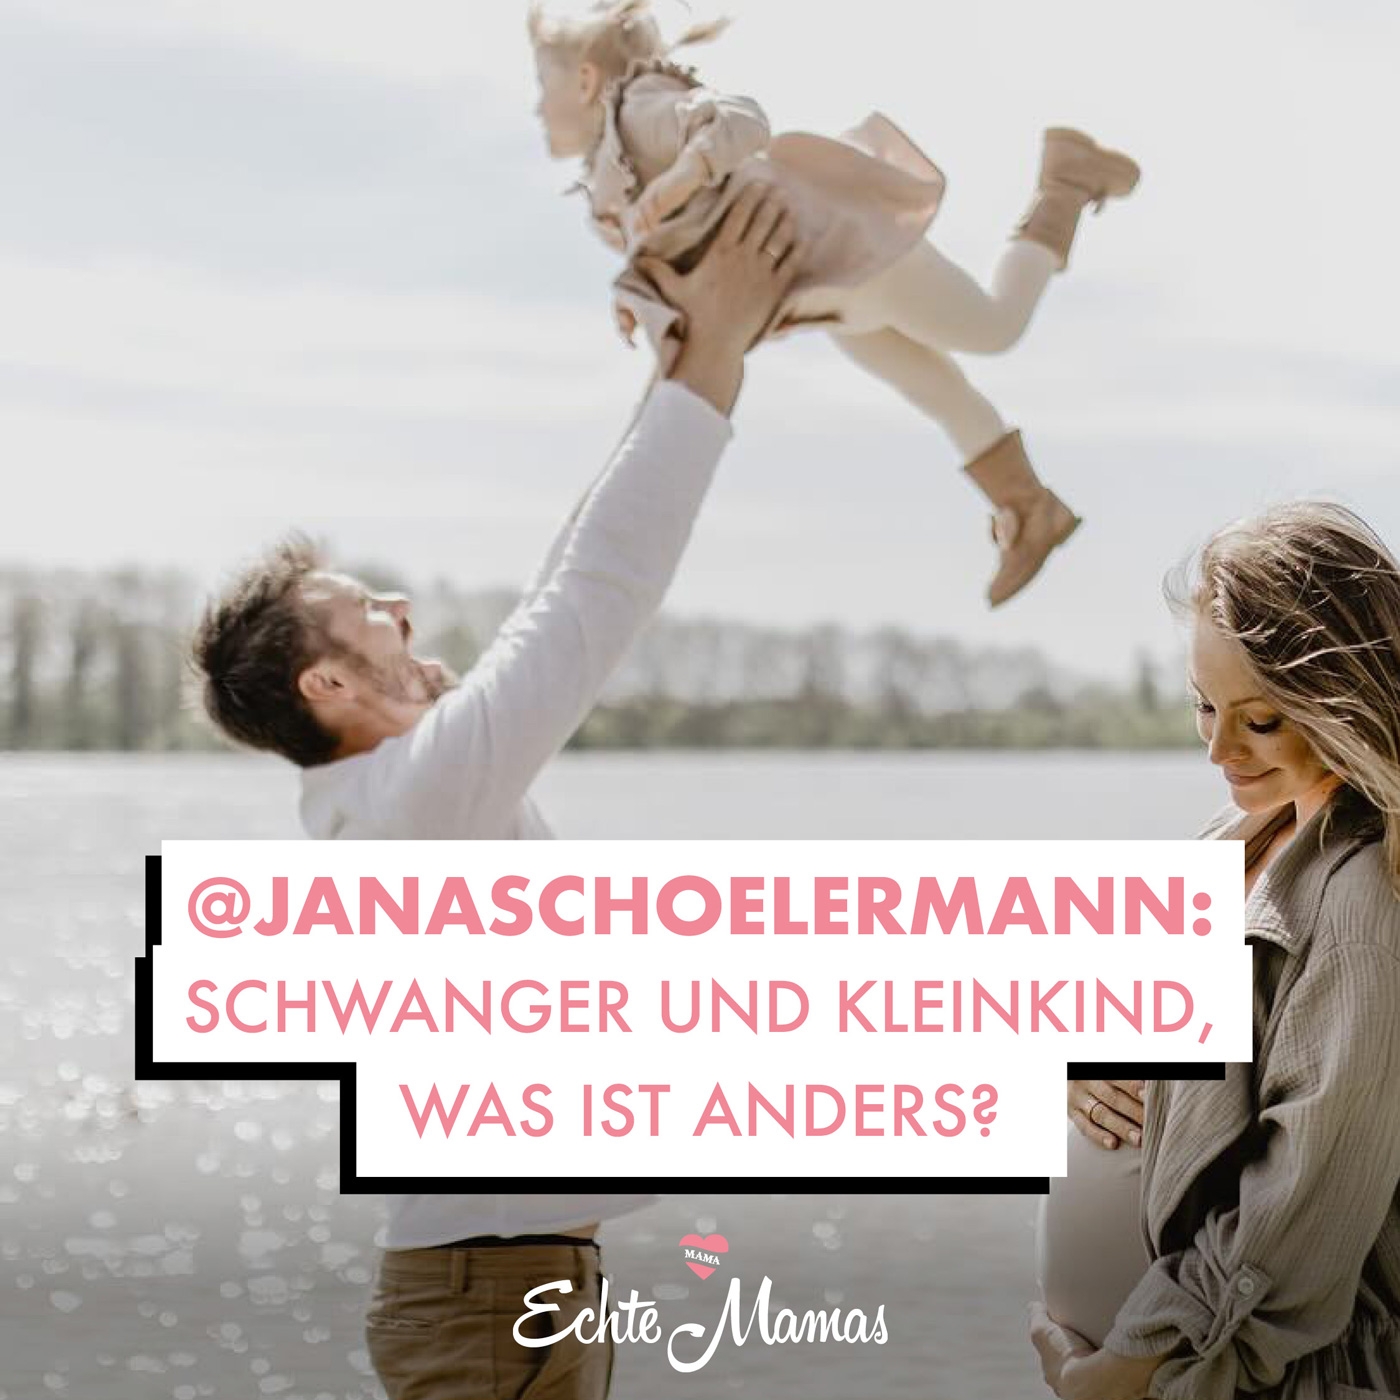 @janaschoelermann: Schwanger und Kleinkind - Was ist anders?